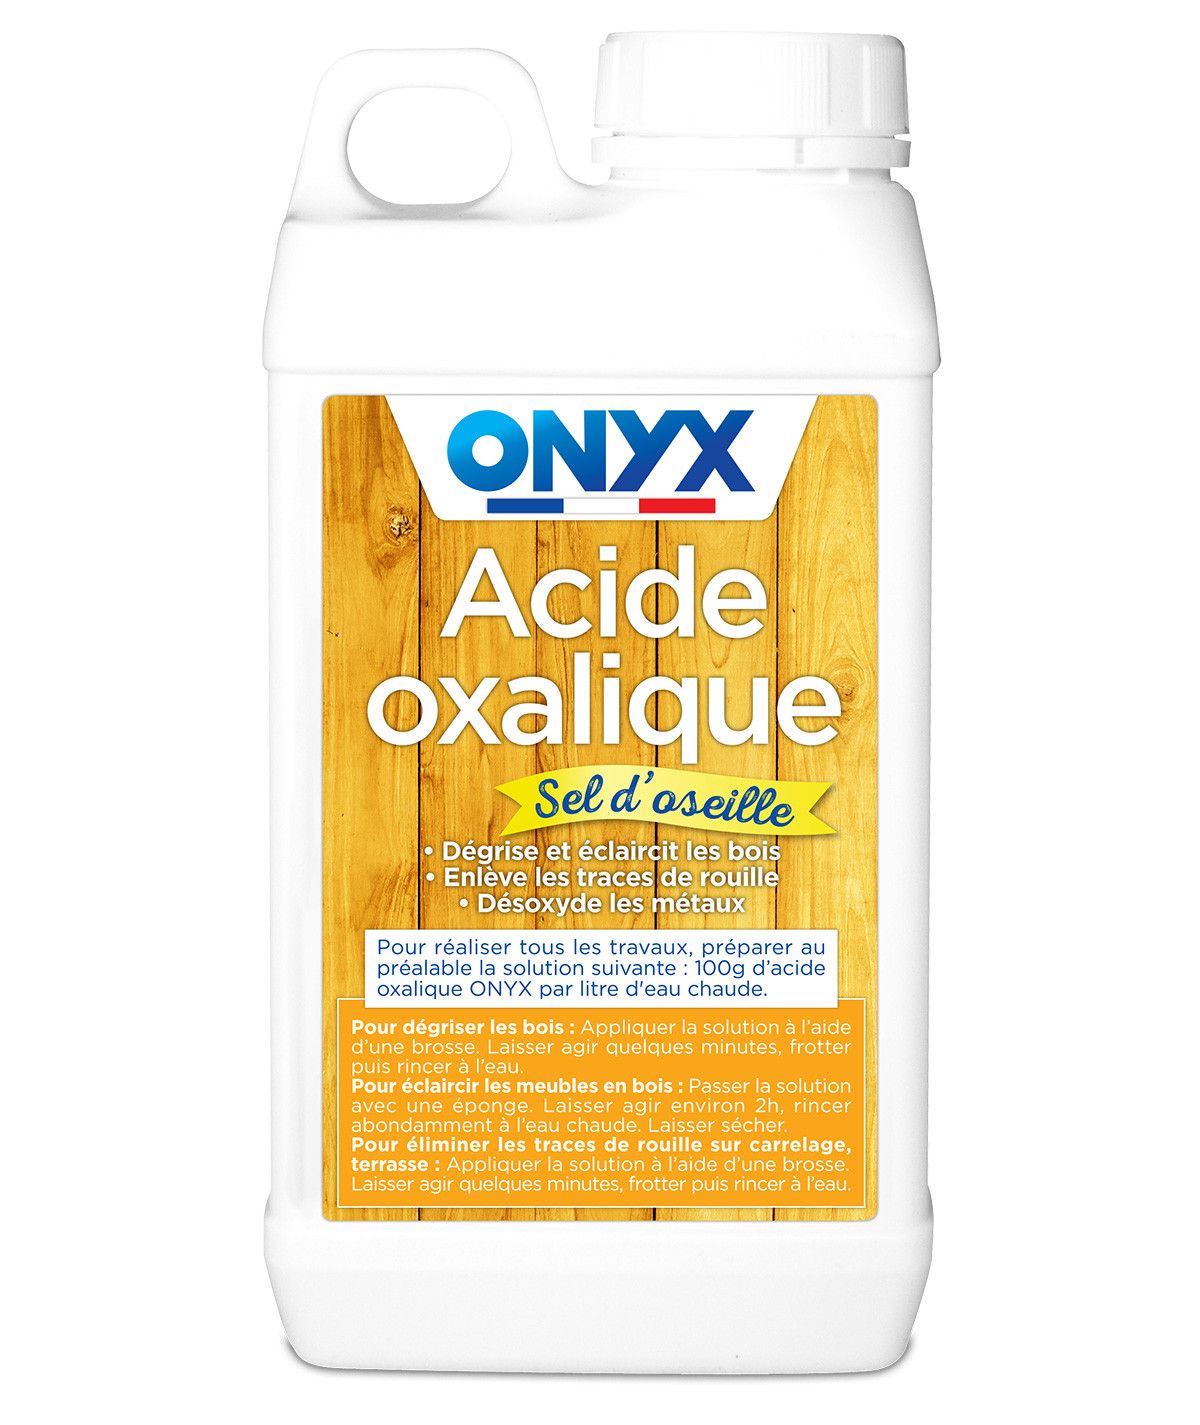 Acide oxalique / Sel d'oseille 1Kg